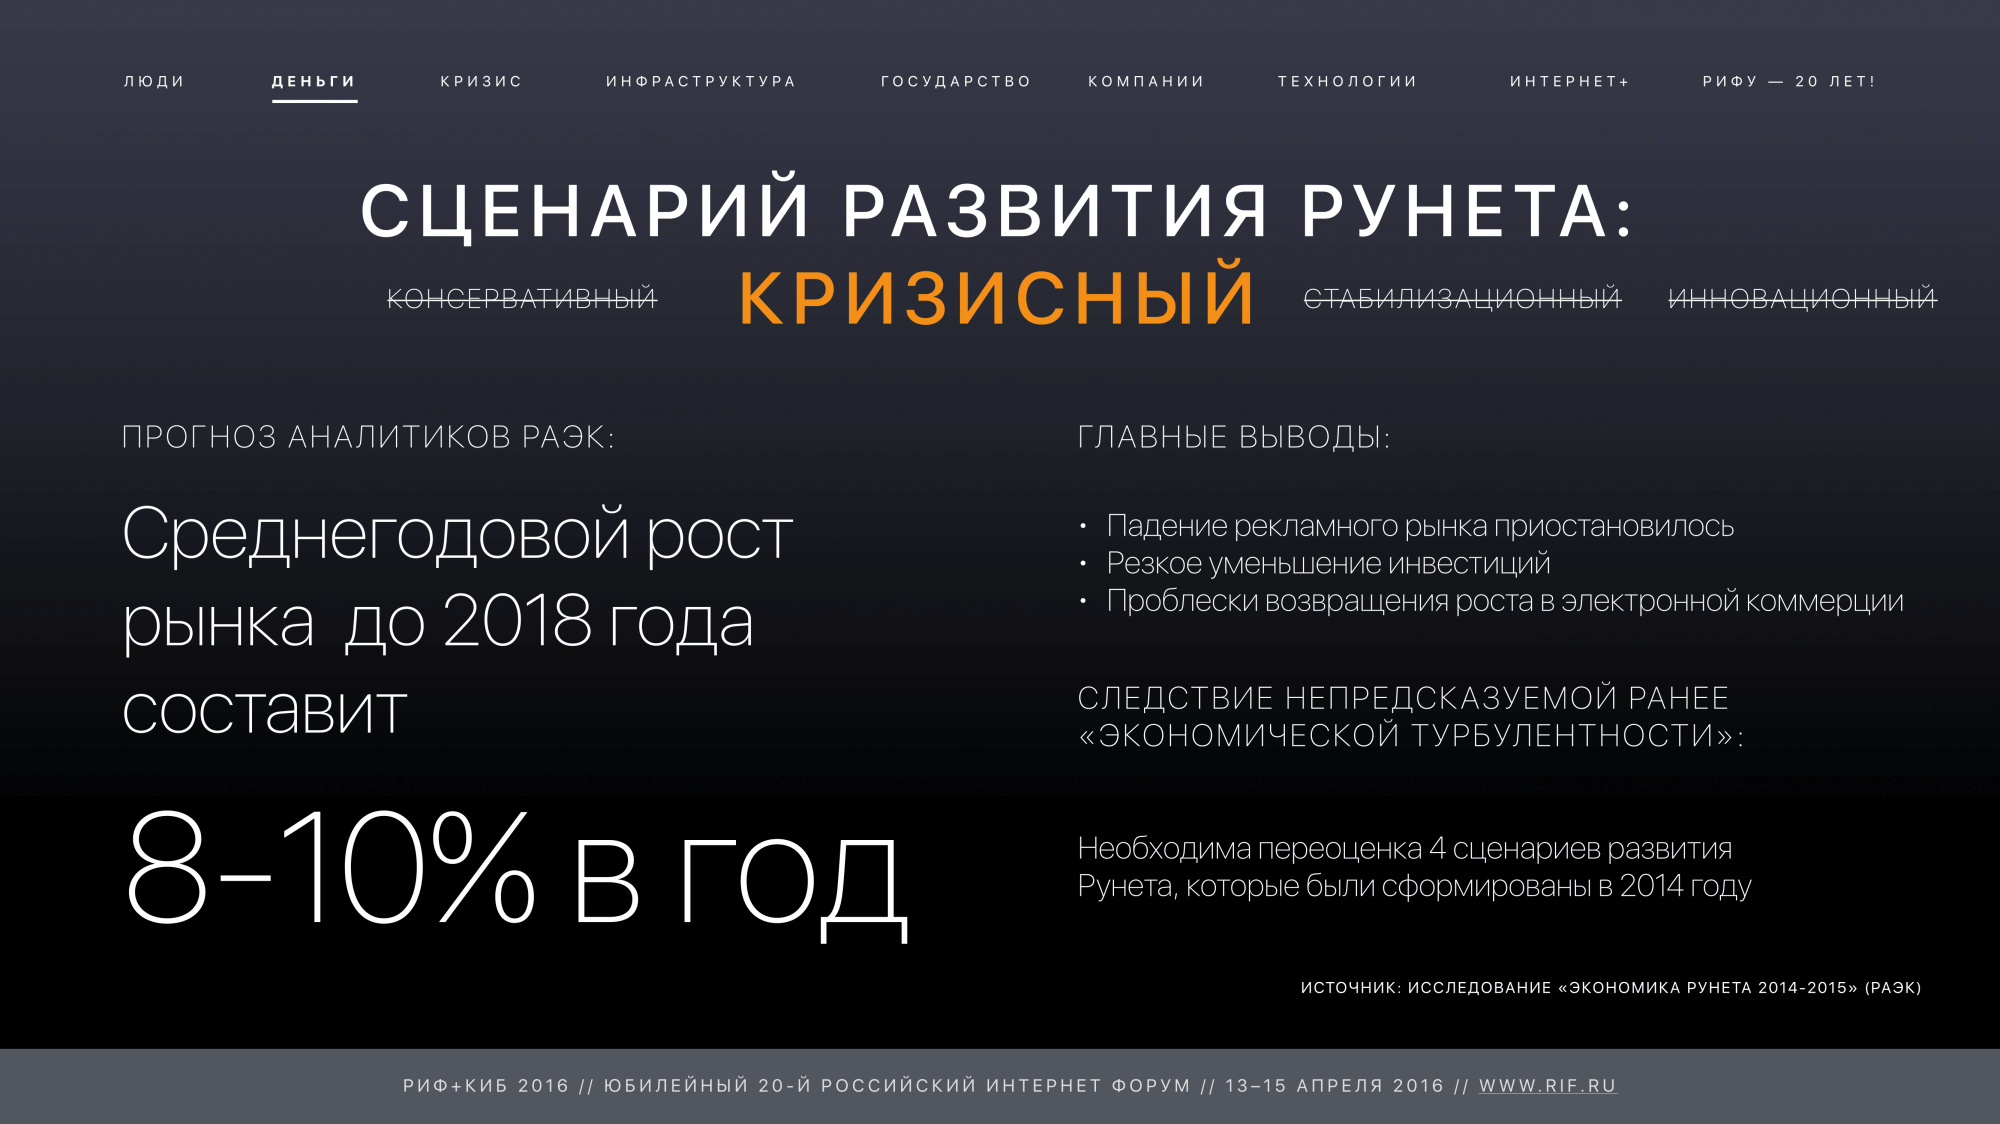 РИФ+КИБ 2015: Кризисный сценарий развития Рунета